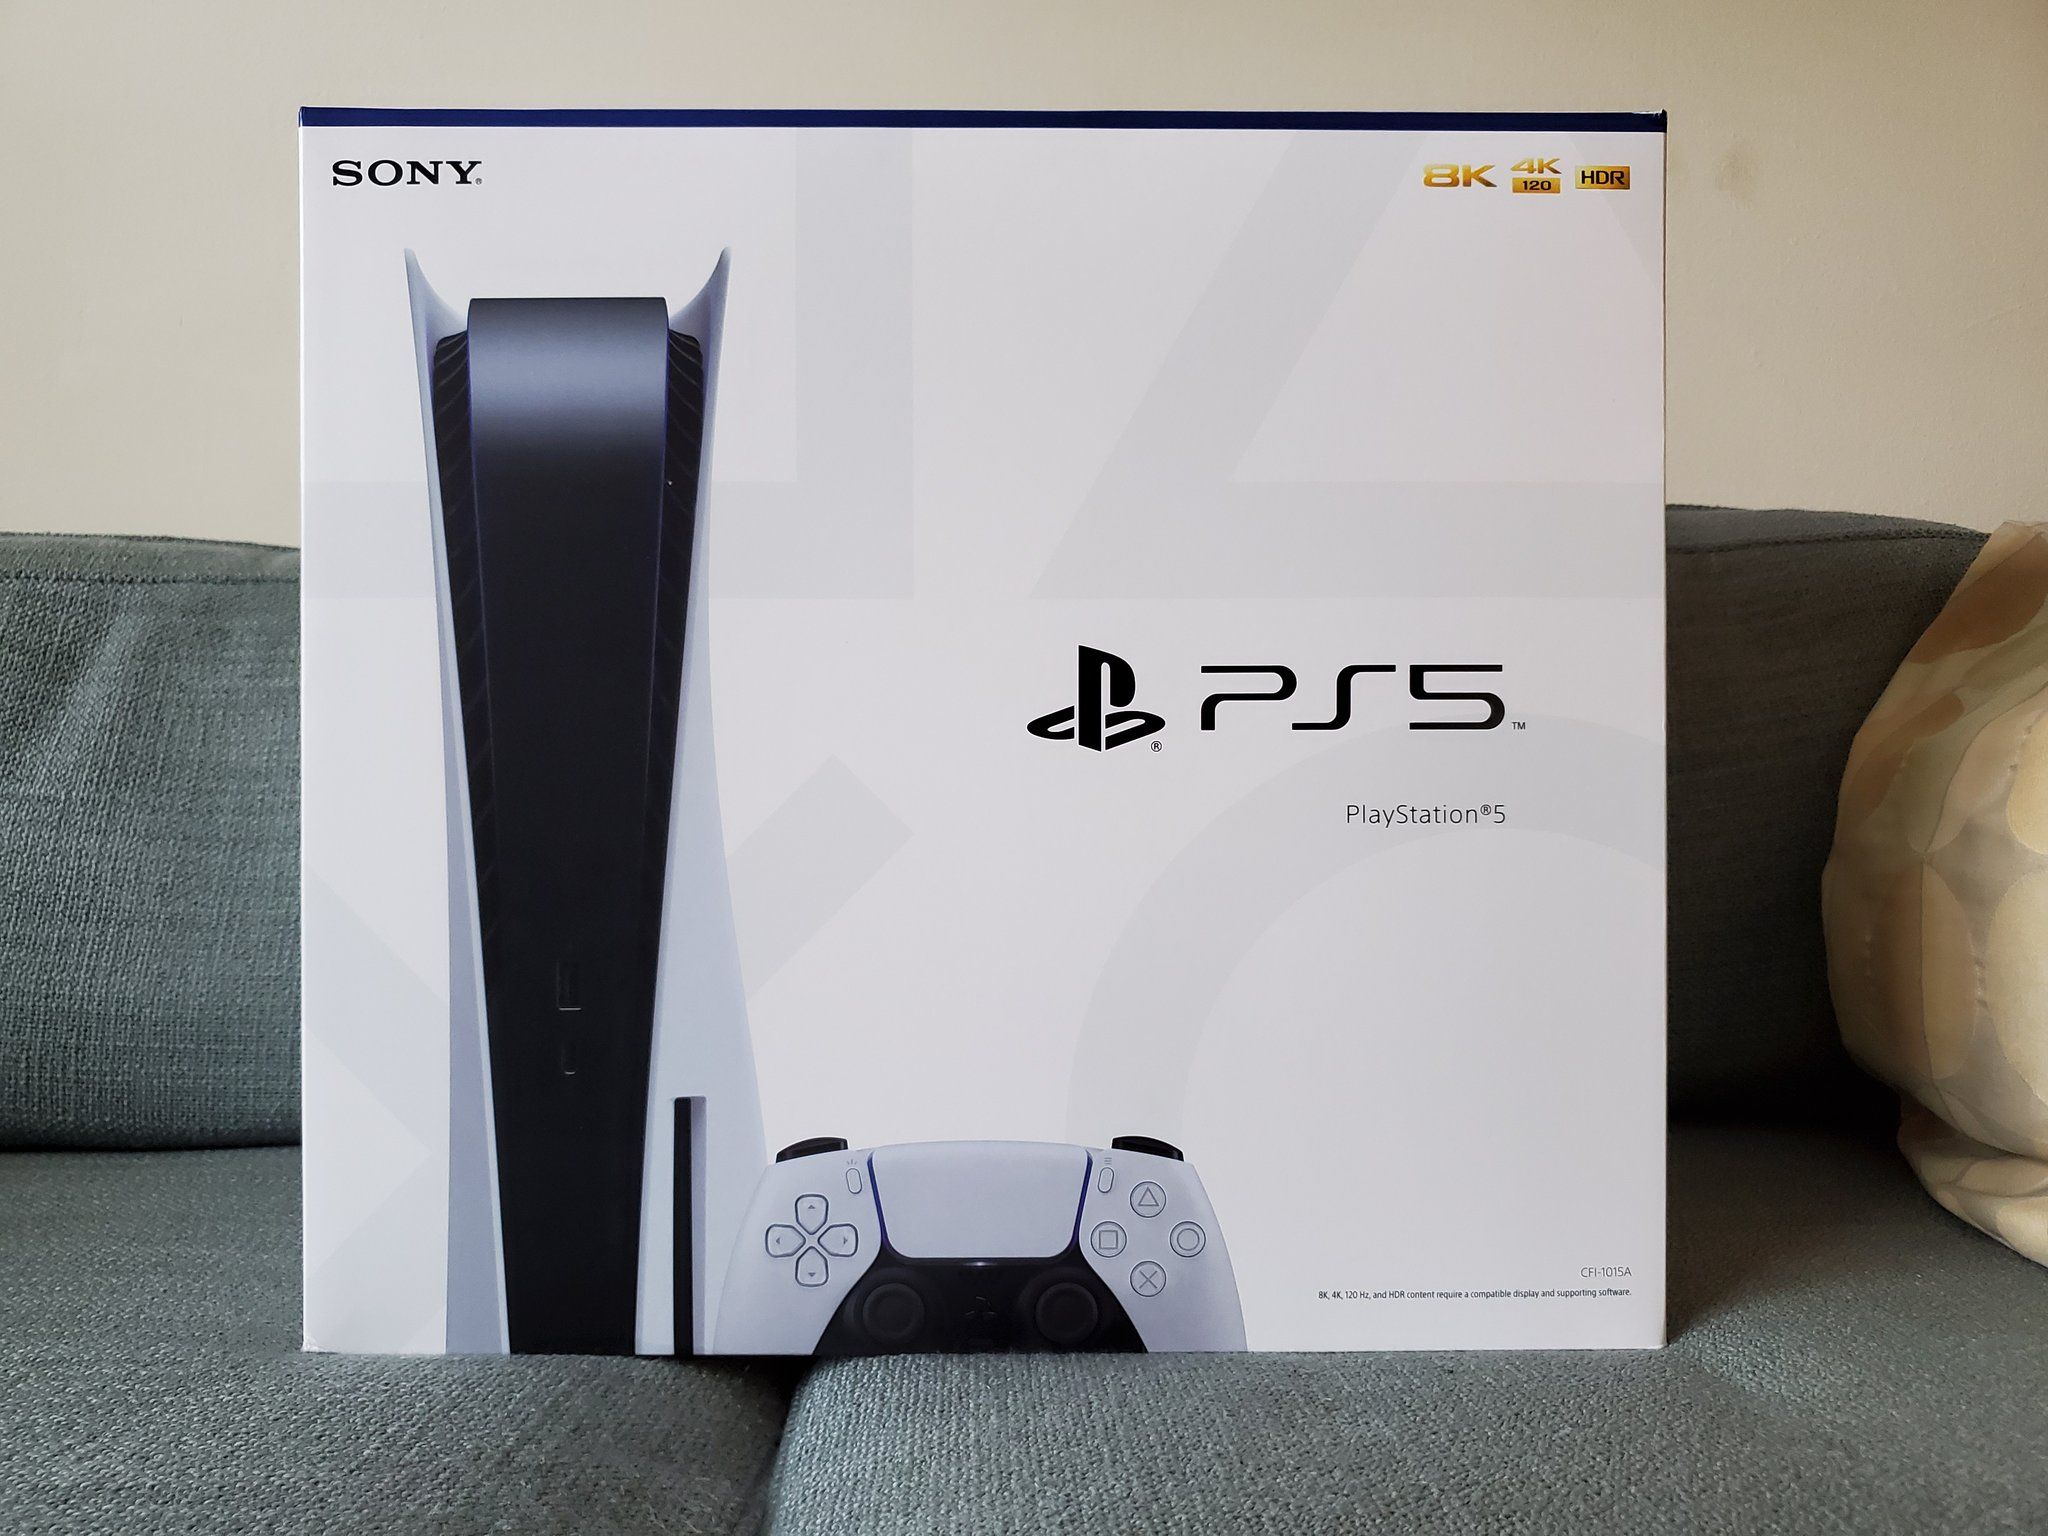 Упаковка PlayStation 5.
Источник: твиттер @SamitSarkar